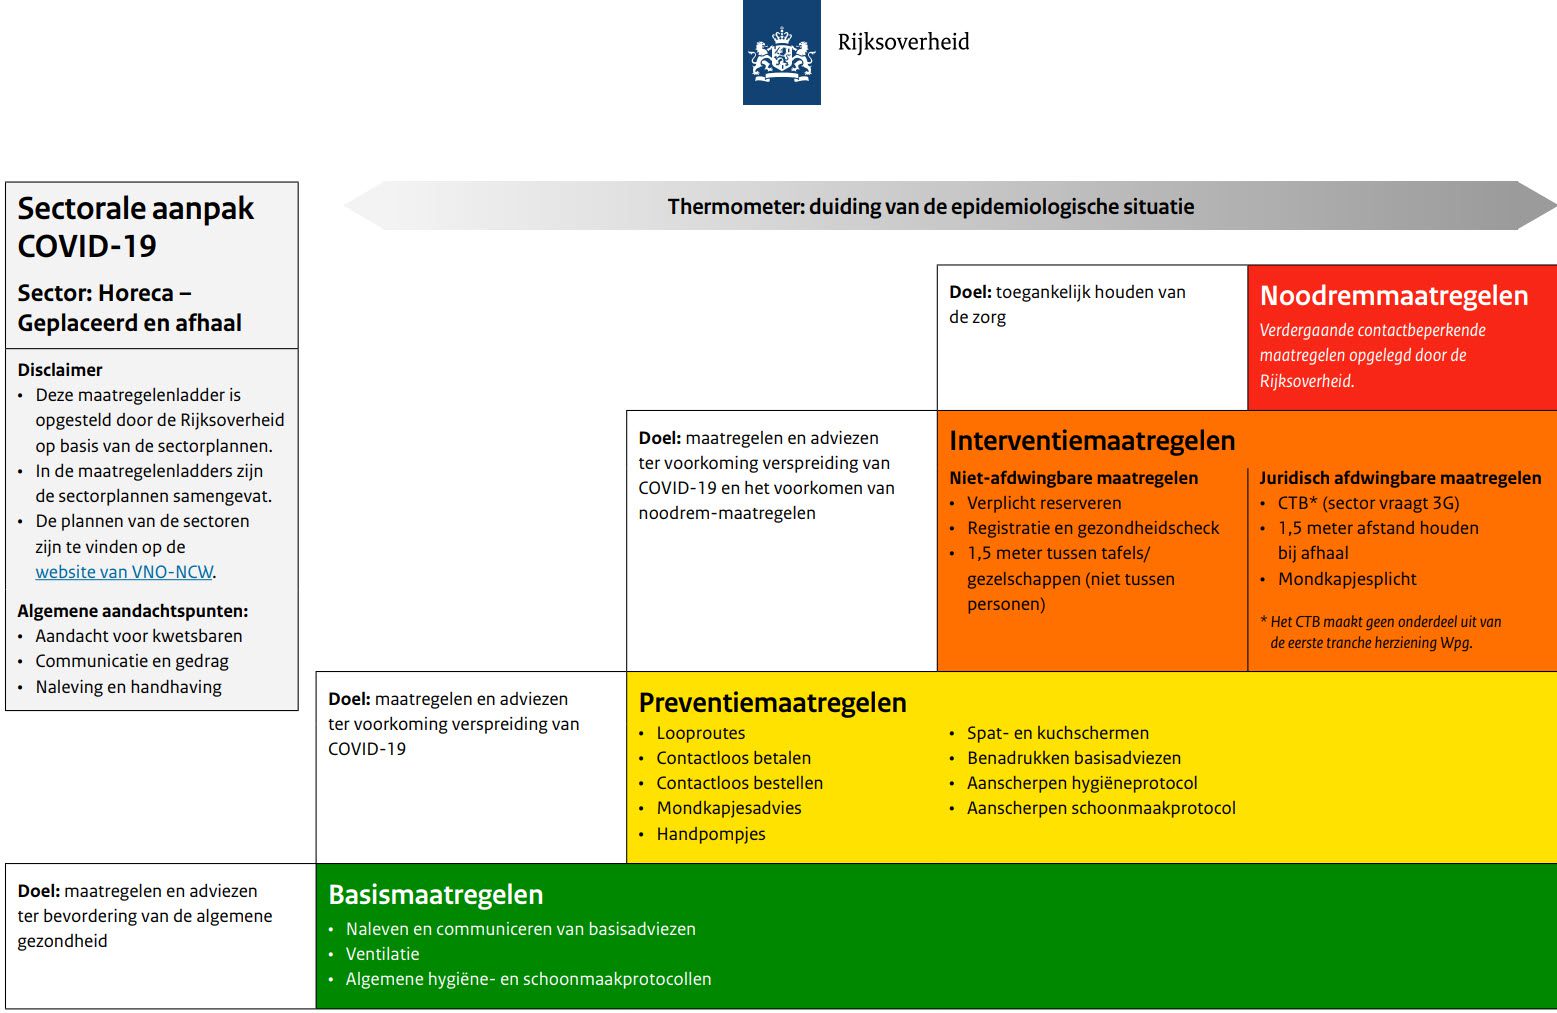 Alleen in Nederland: “Maatregelenladders voor de sectorale aanpak Covid-19” - 48770